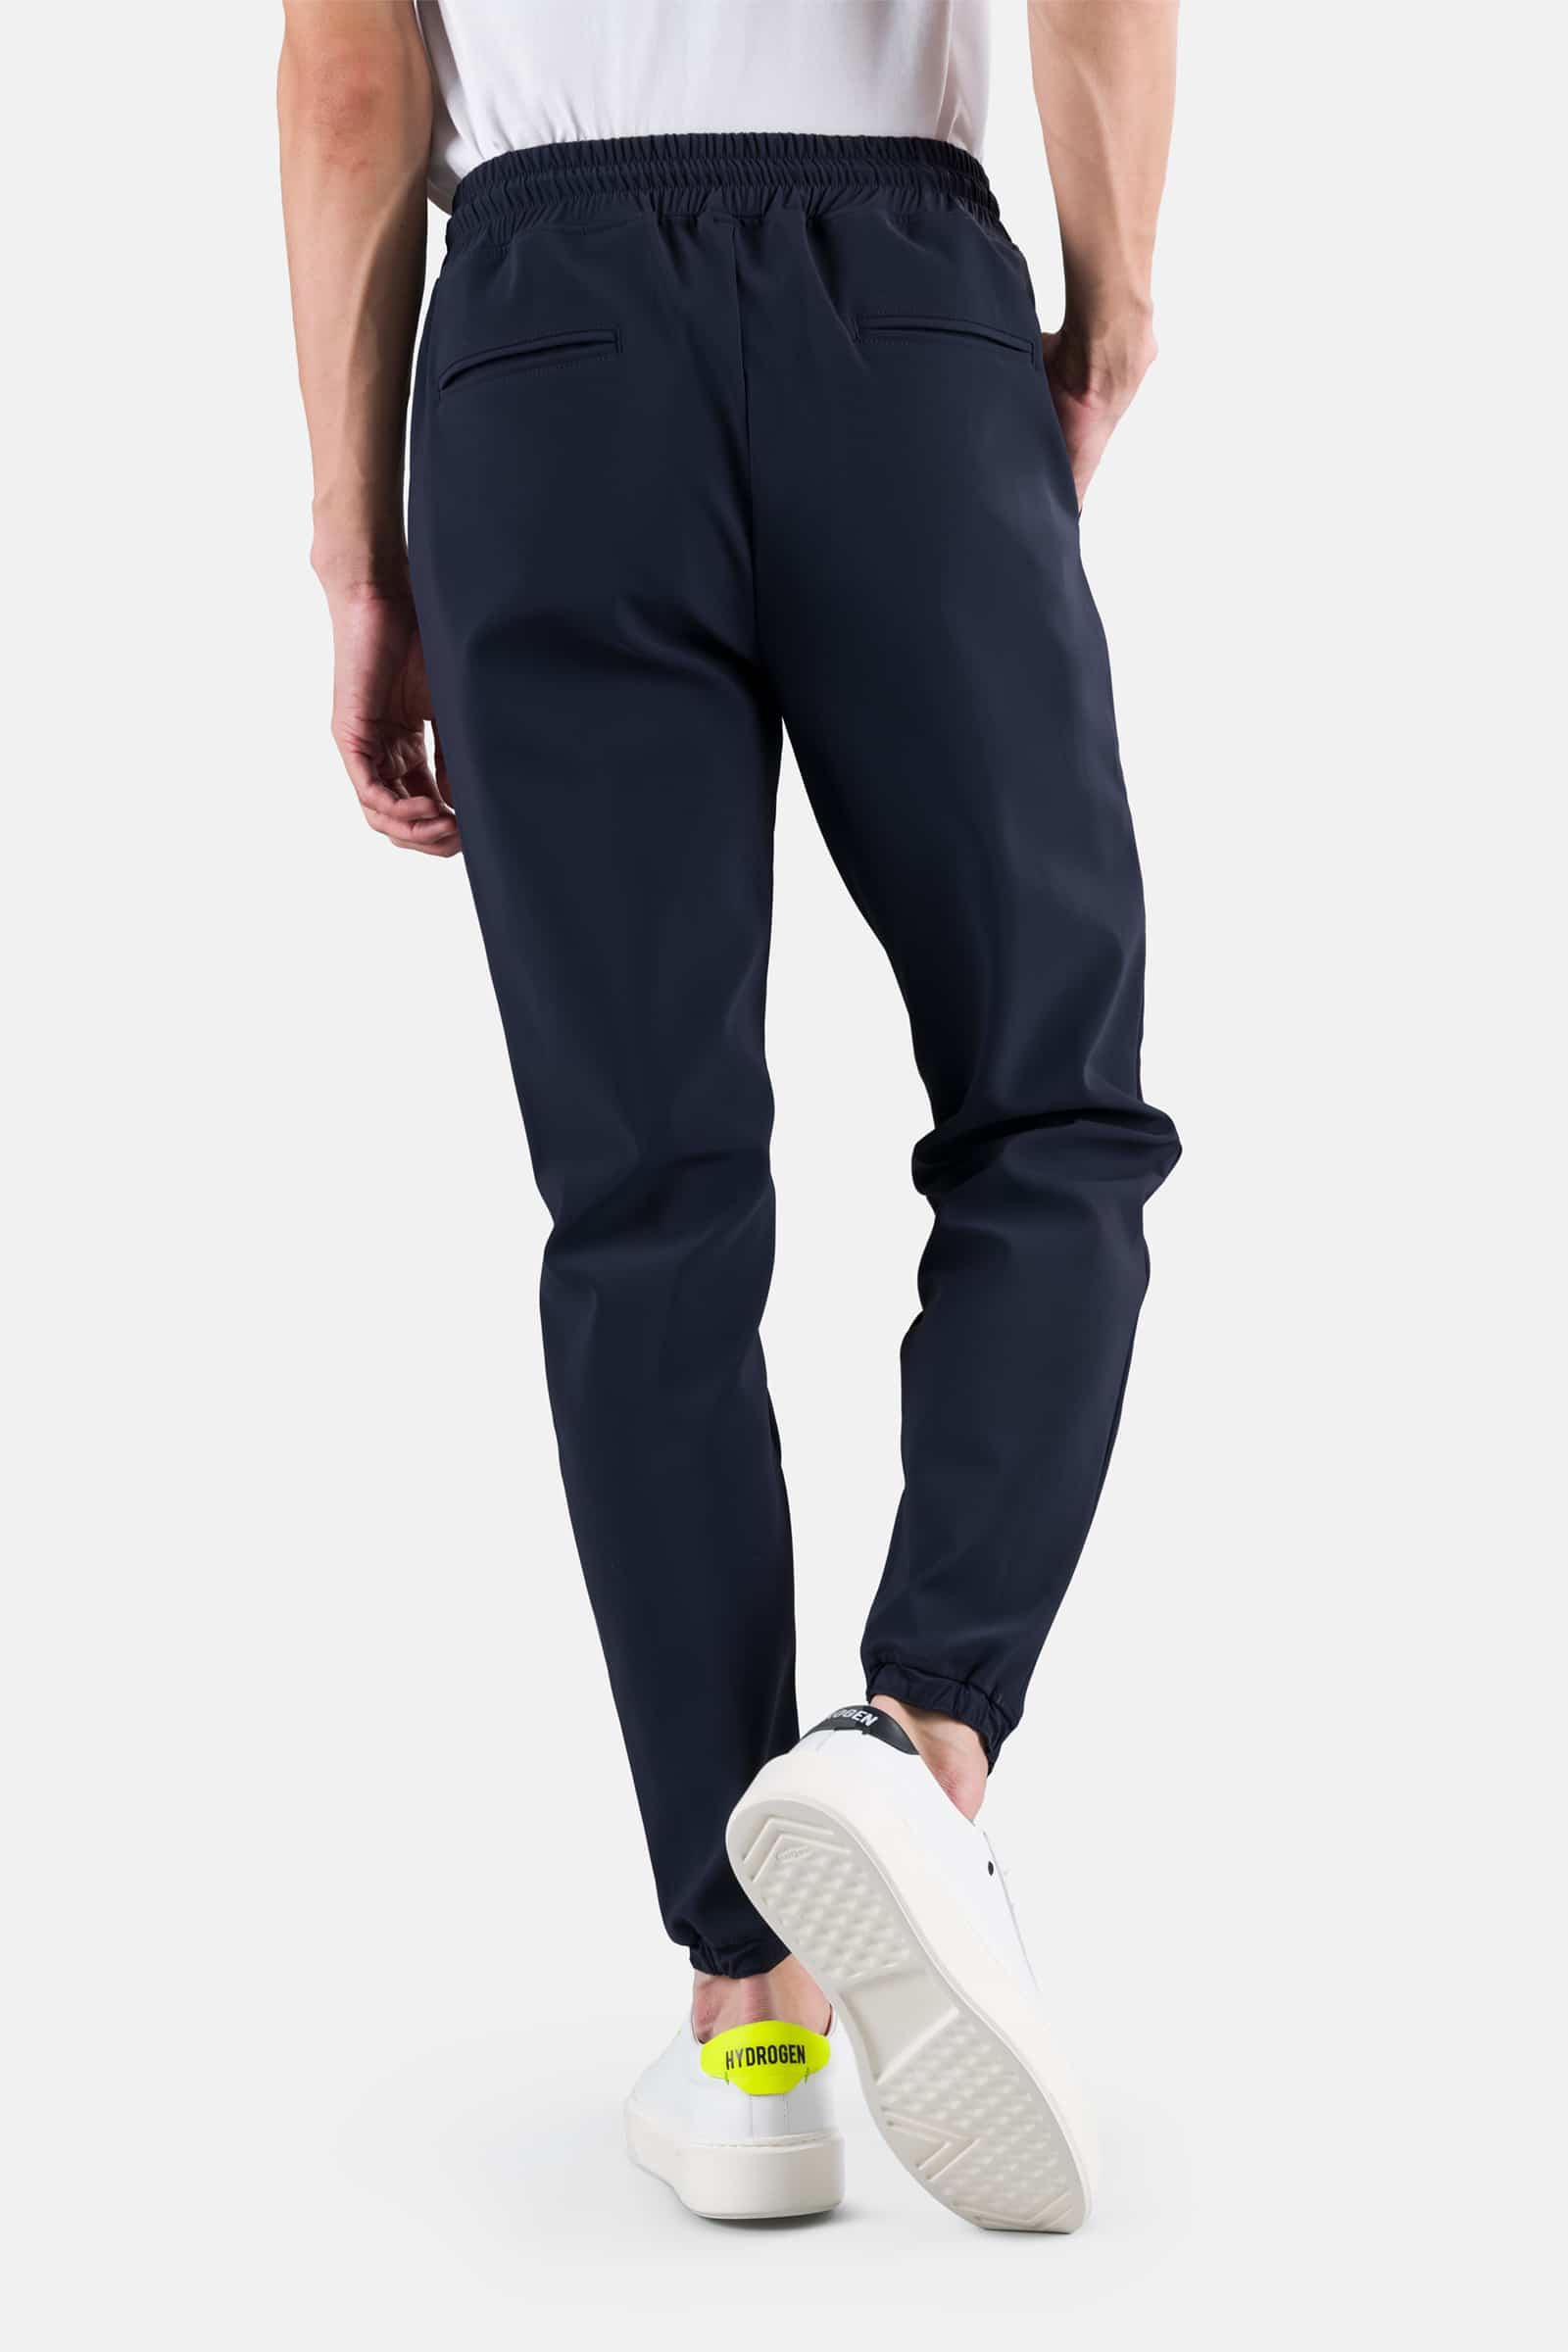 TRACKSUIT PANTS - BLUE NAVY - Hydrogen - Luxury Sportwear